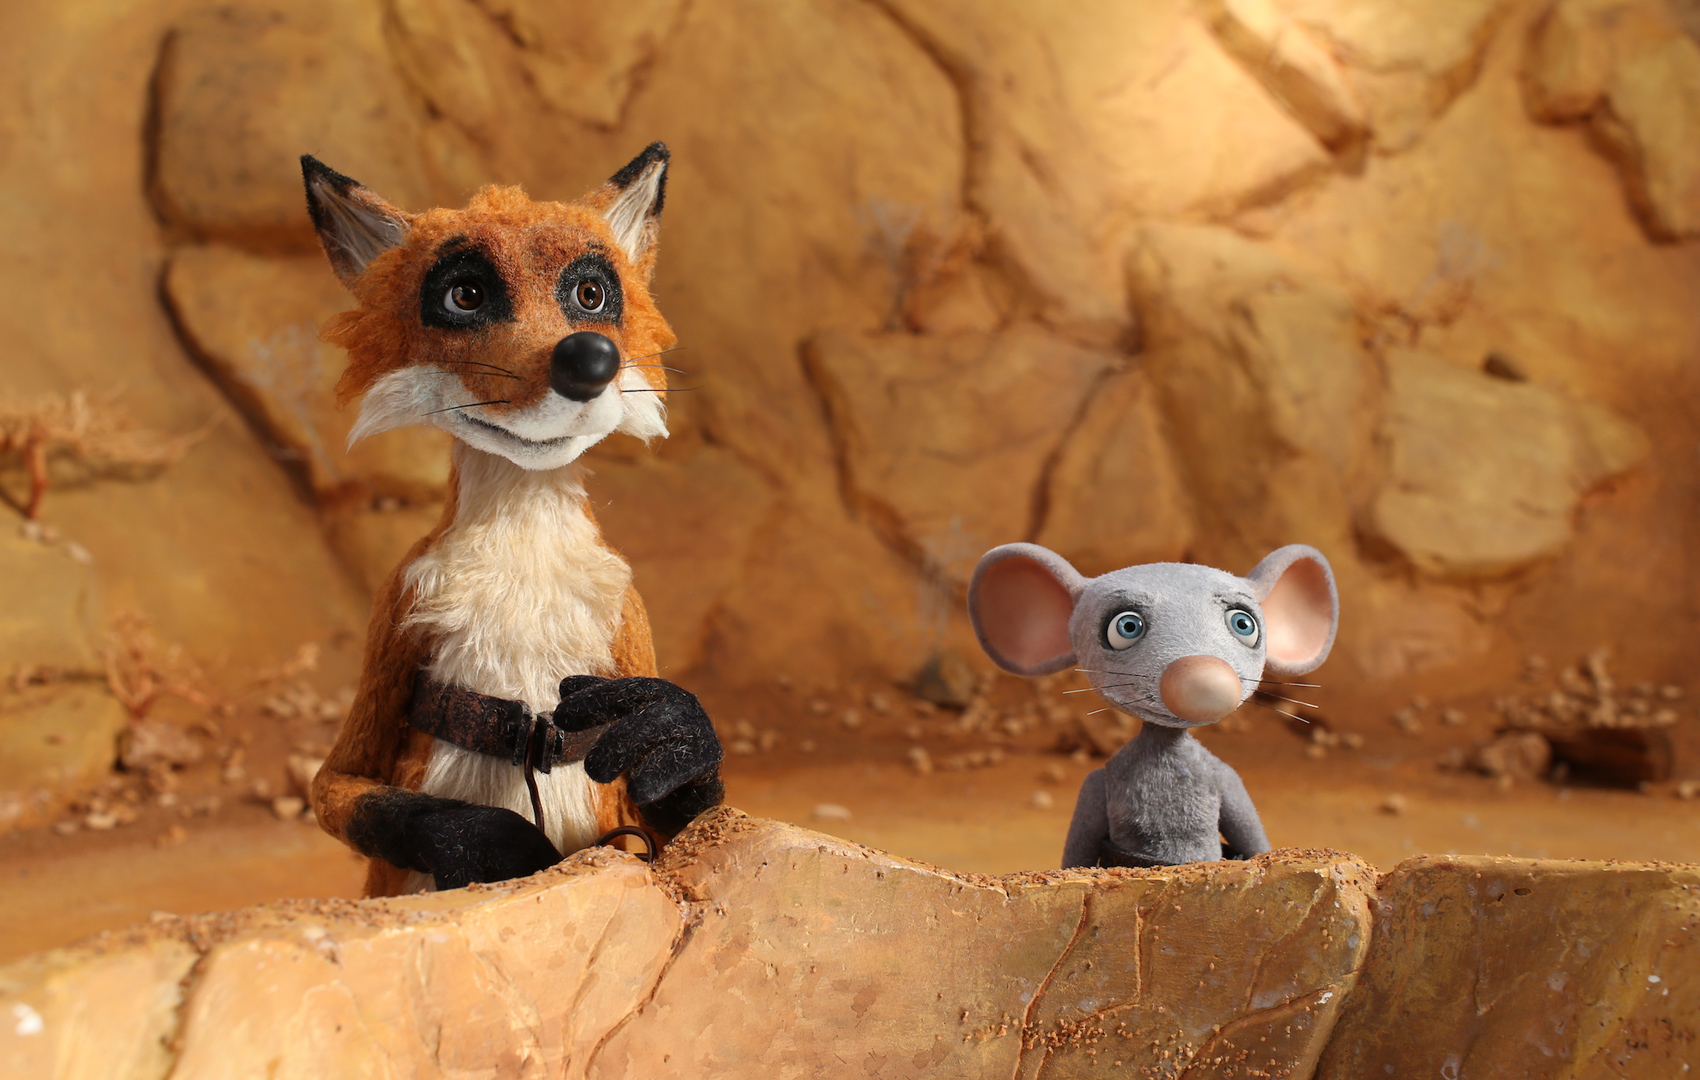 Puppentrick-Animation: Ein Fuchs steht neben einer Maus vor einem steinigen Wüstenhintergrund.